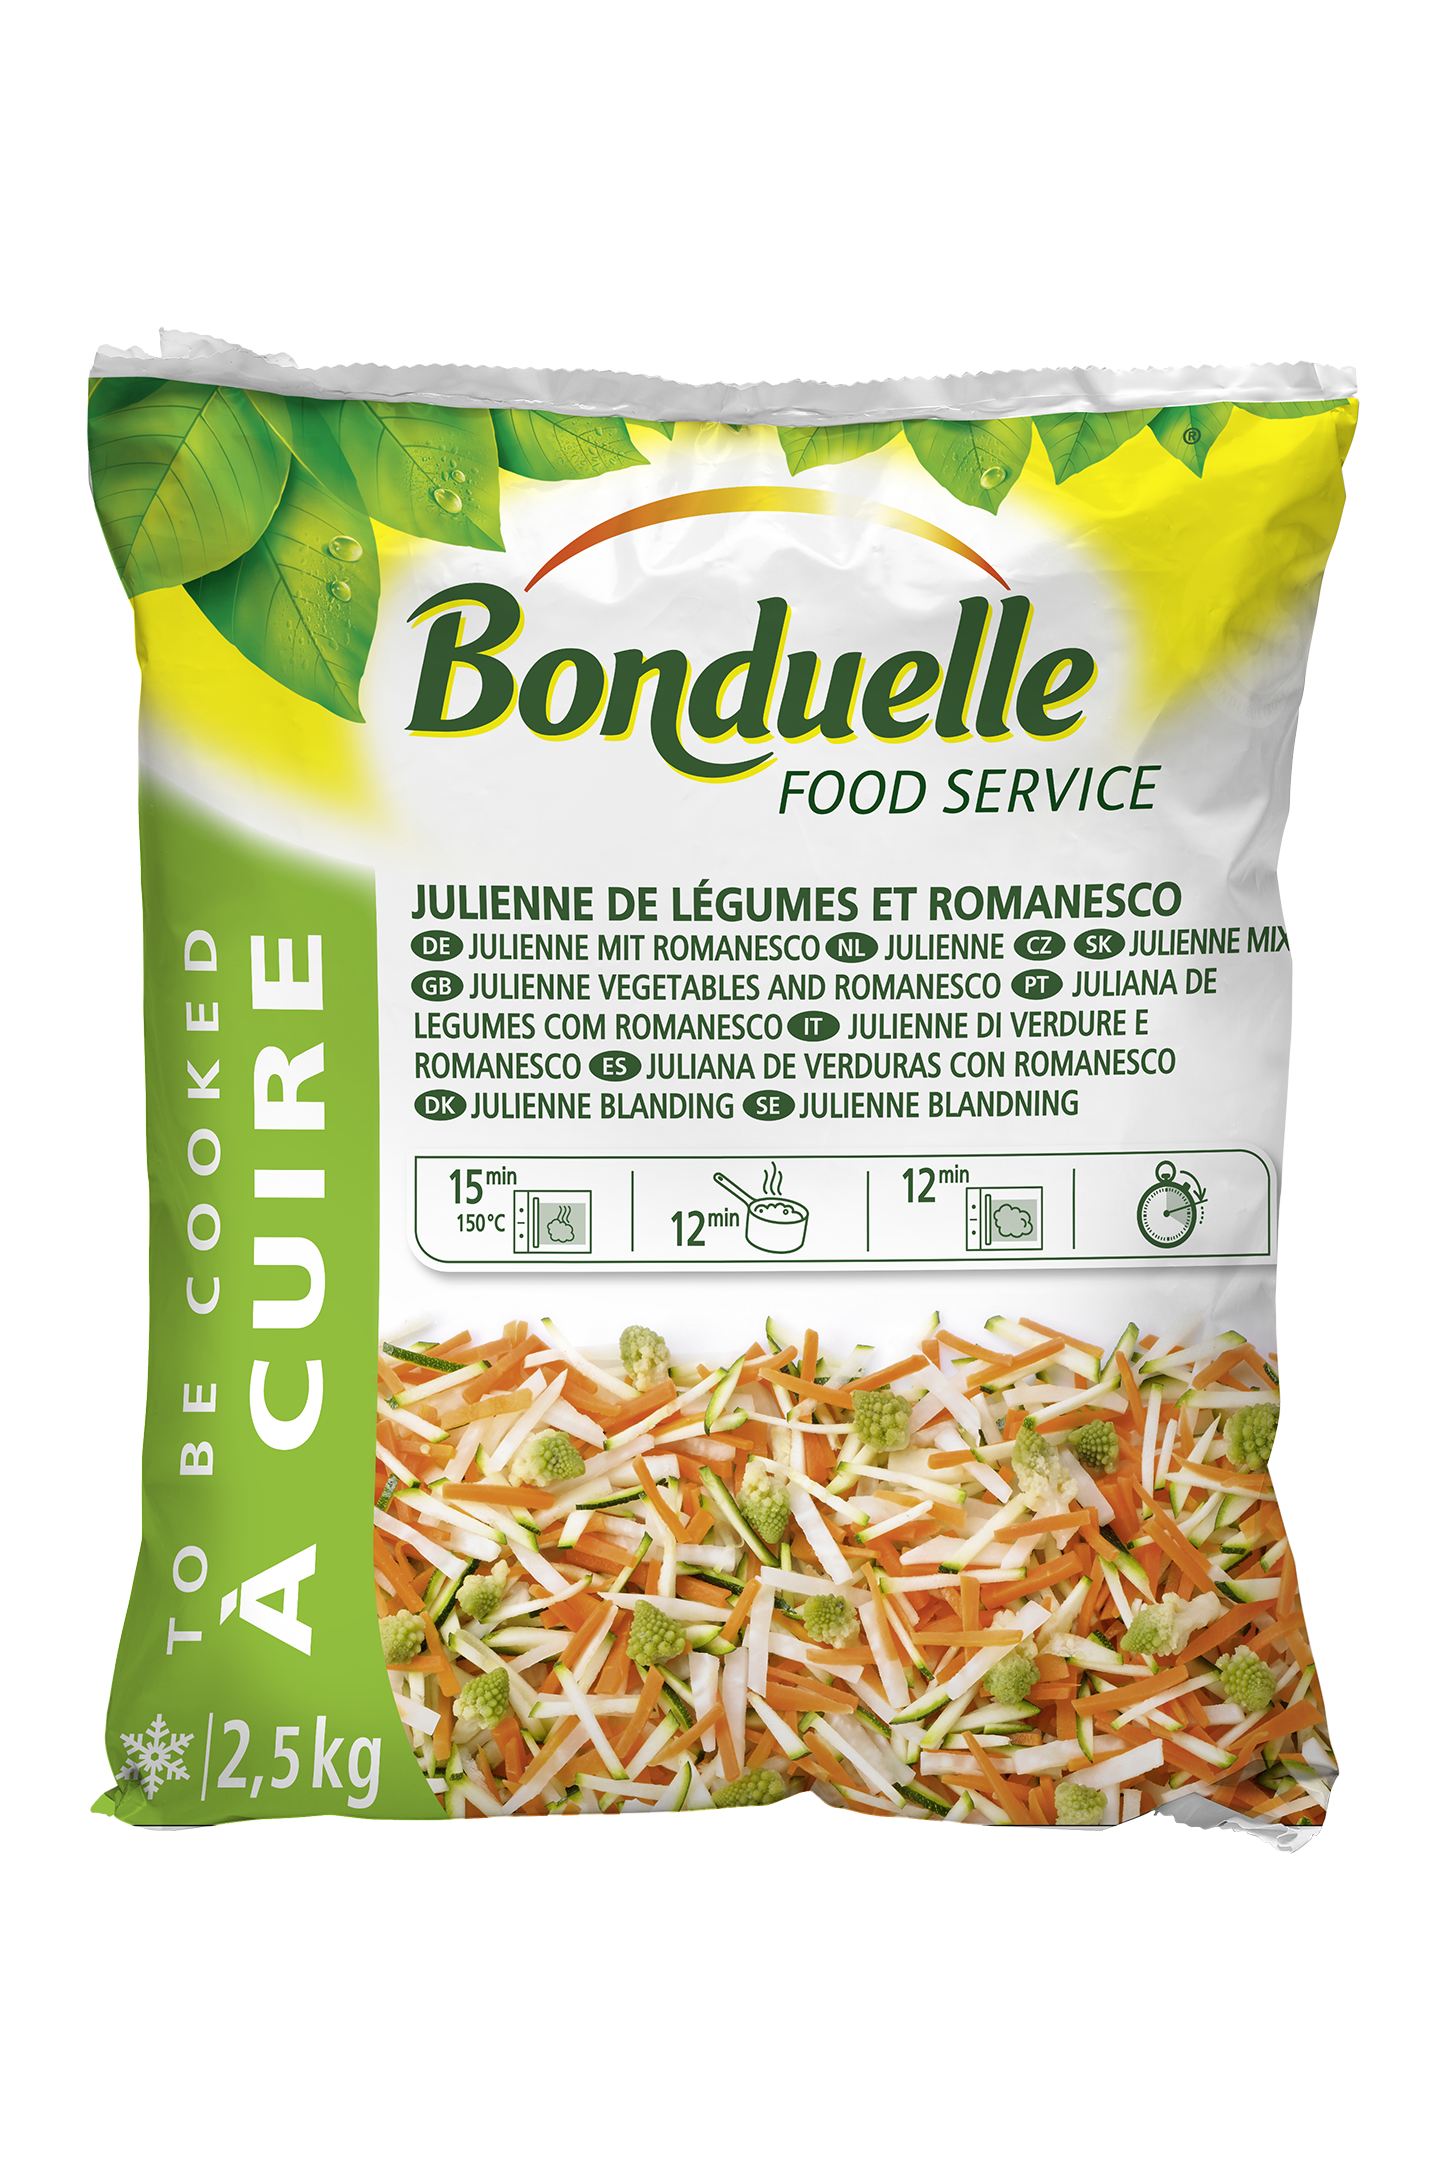 Julienne de Légumes et Romanesco 2.5kg Légumes Surgelé Bonduelle Food Service